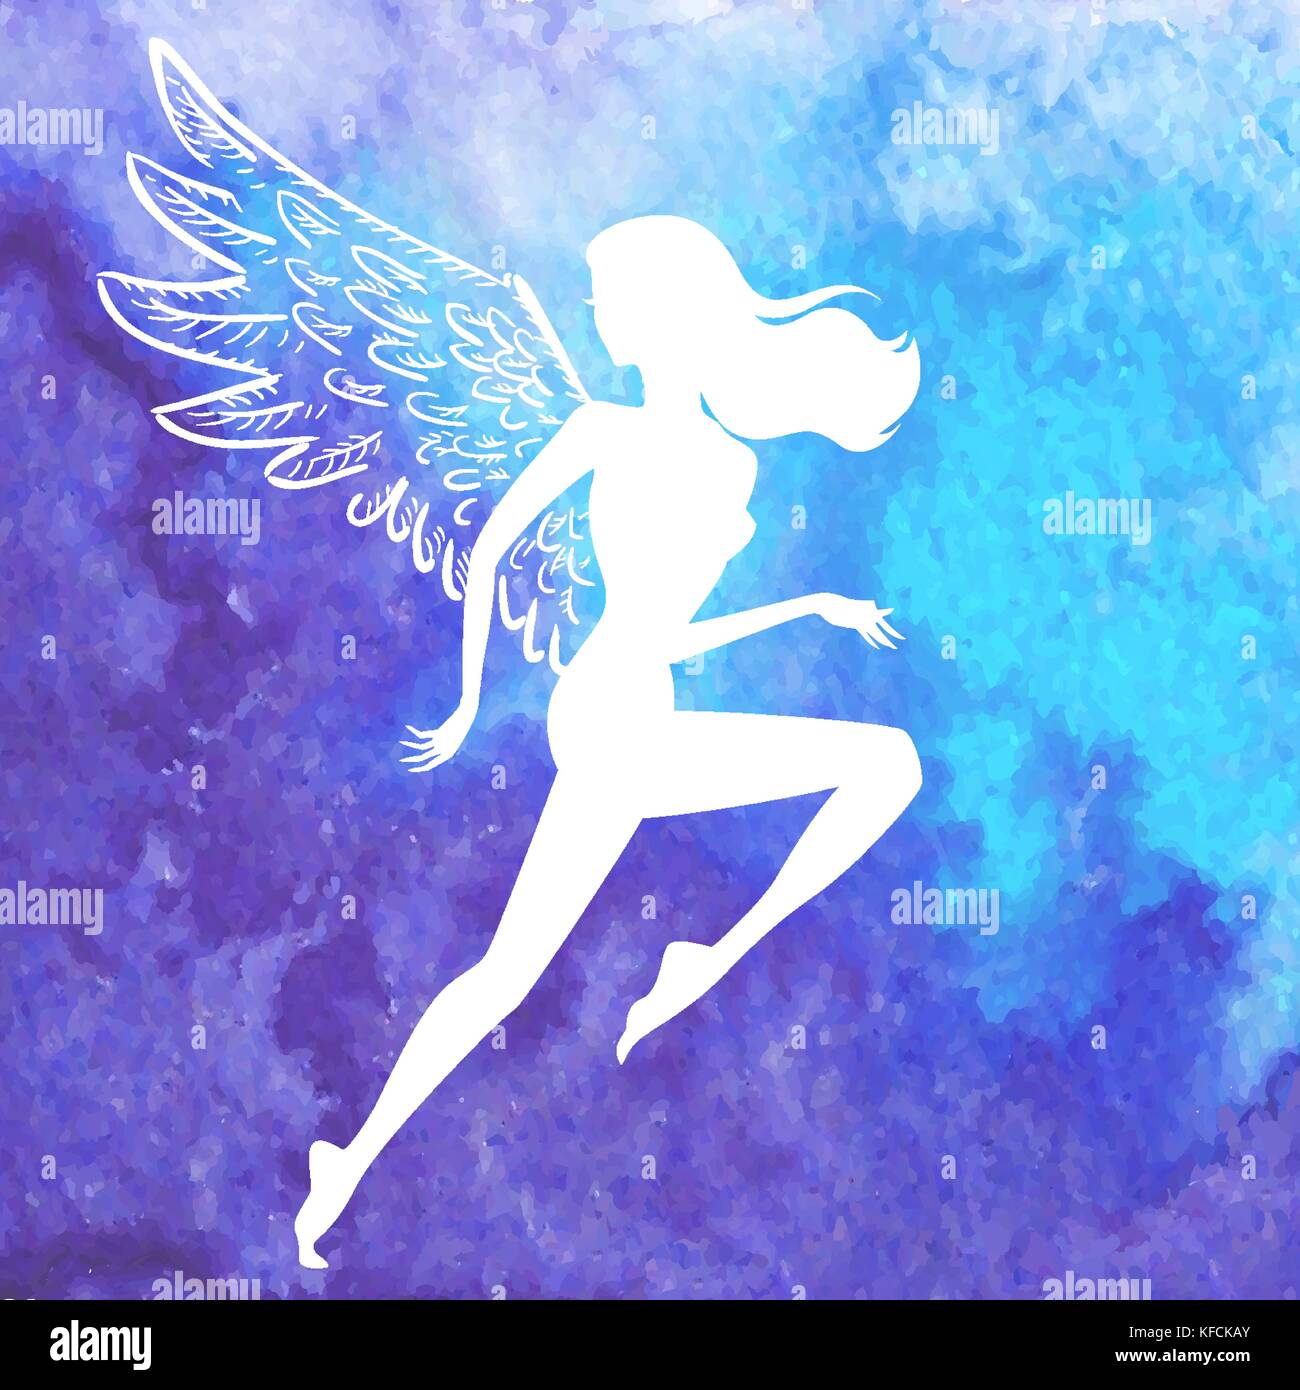 Vektor weiße Silhouette, Frau mit Angel Wings fliegen über Aquarell blau Hand gezeichnet Hintergrund Stock Vektor